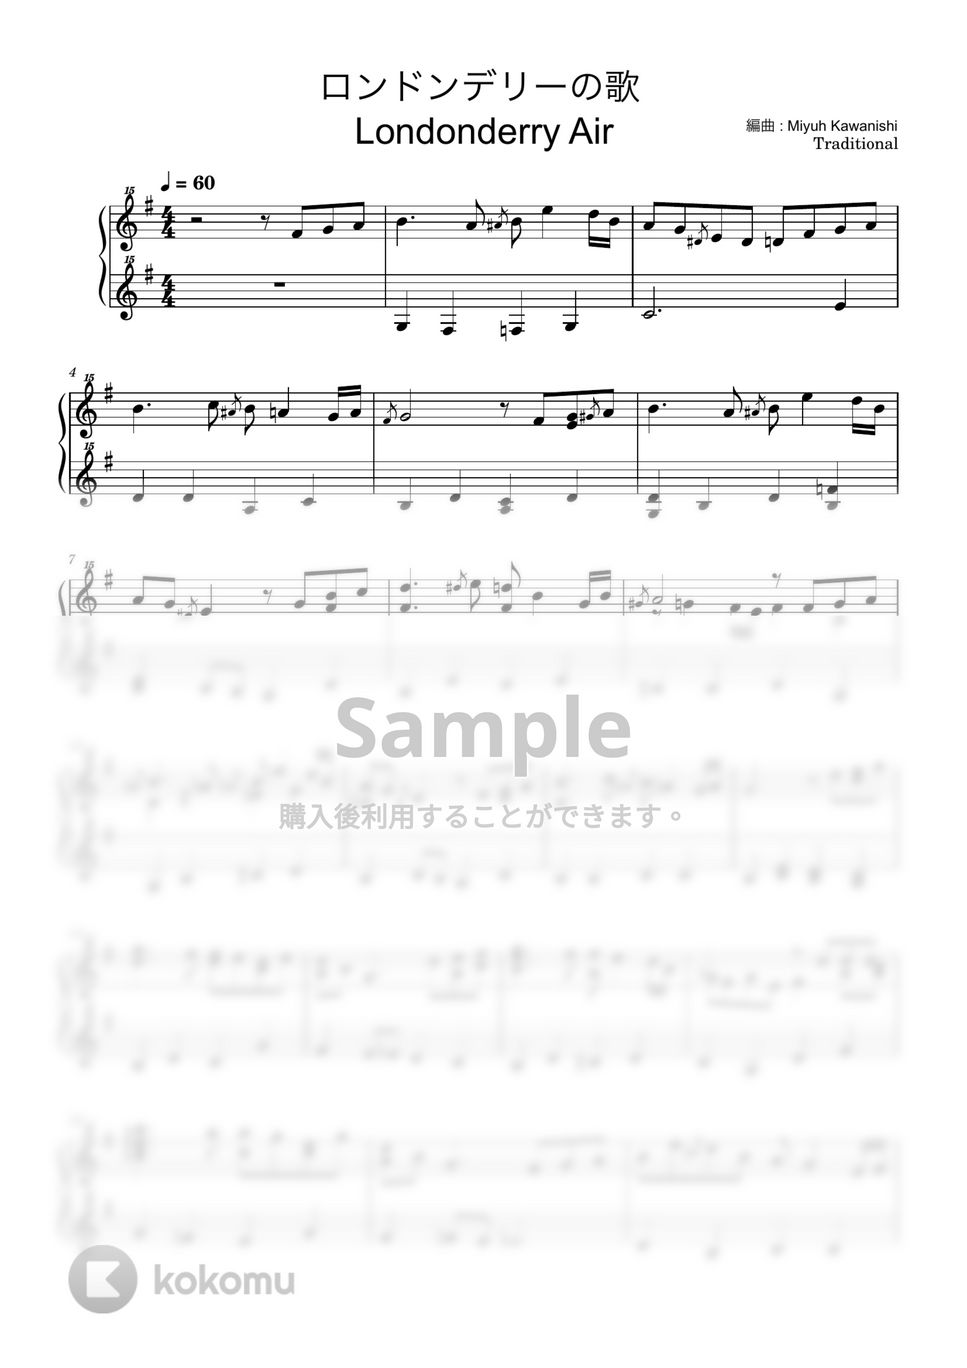 アイルランド民謡 - ロンドンデリーの歌 Londonderry Air (ピアノ / トイピアノ / 32鍵盤) by 川西 三裕